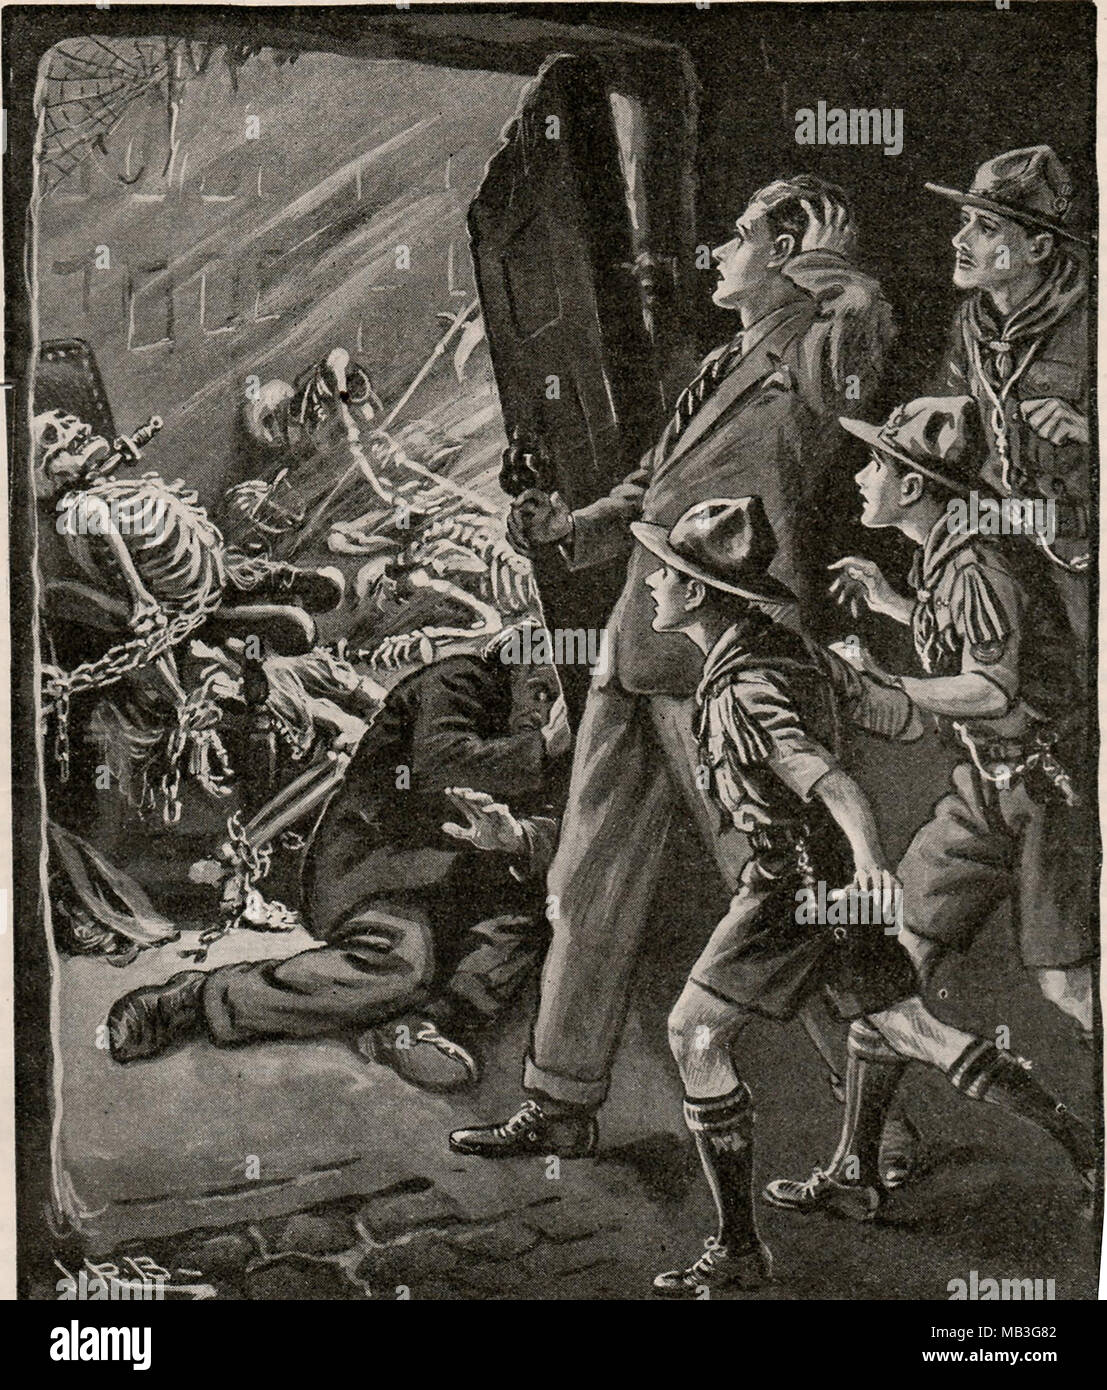 Une illustration de l'Garçons propre rapport annuel 1932-1933 (UK) montrant les boy scouts découvrir un tas de squelettes enchaînés Banque D'Images